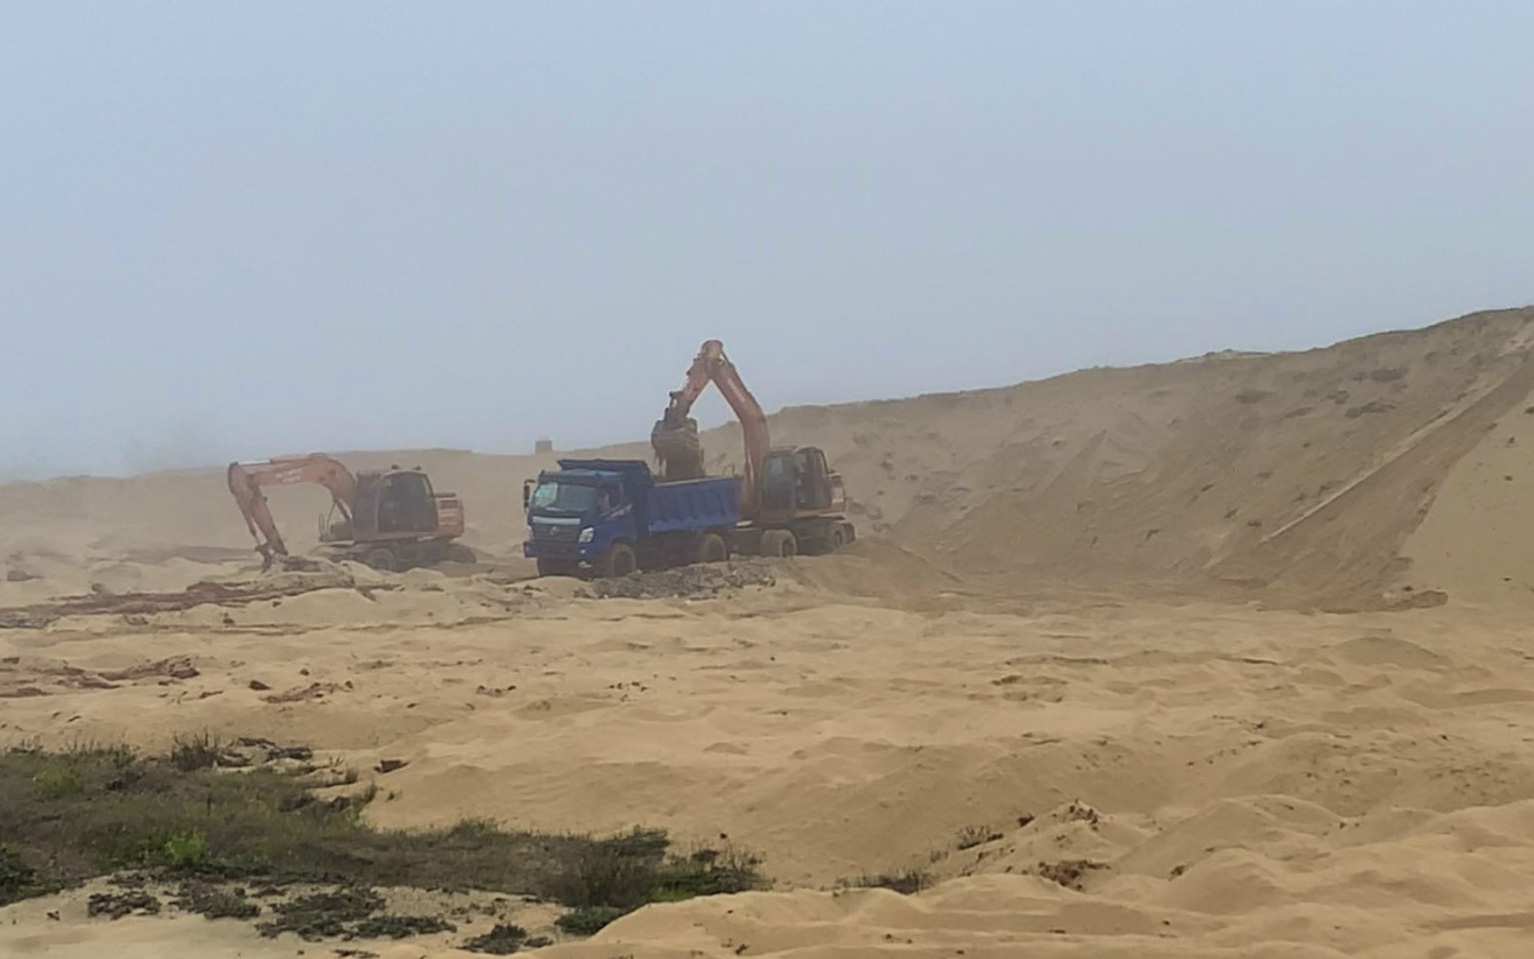 Bố Trạch (Quảng Bình): Dự án chưa được cấp phép khai thác khoáng sản đã múc cát rầm rộ